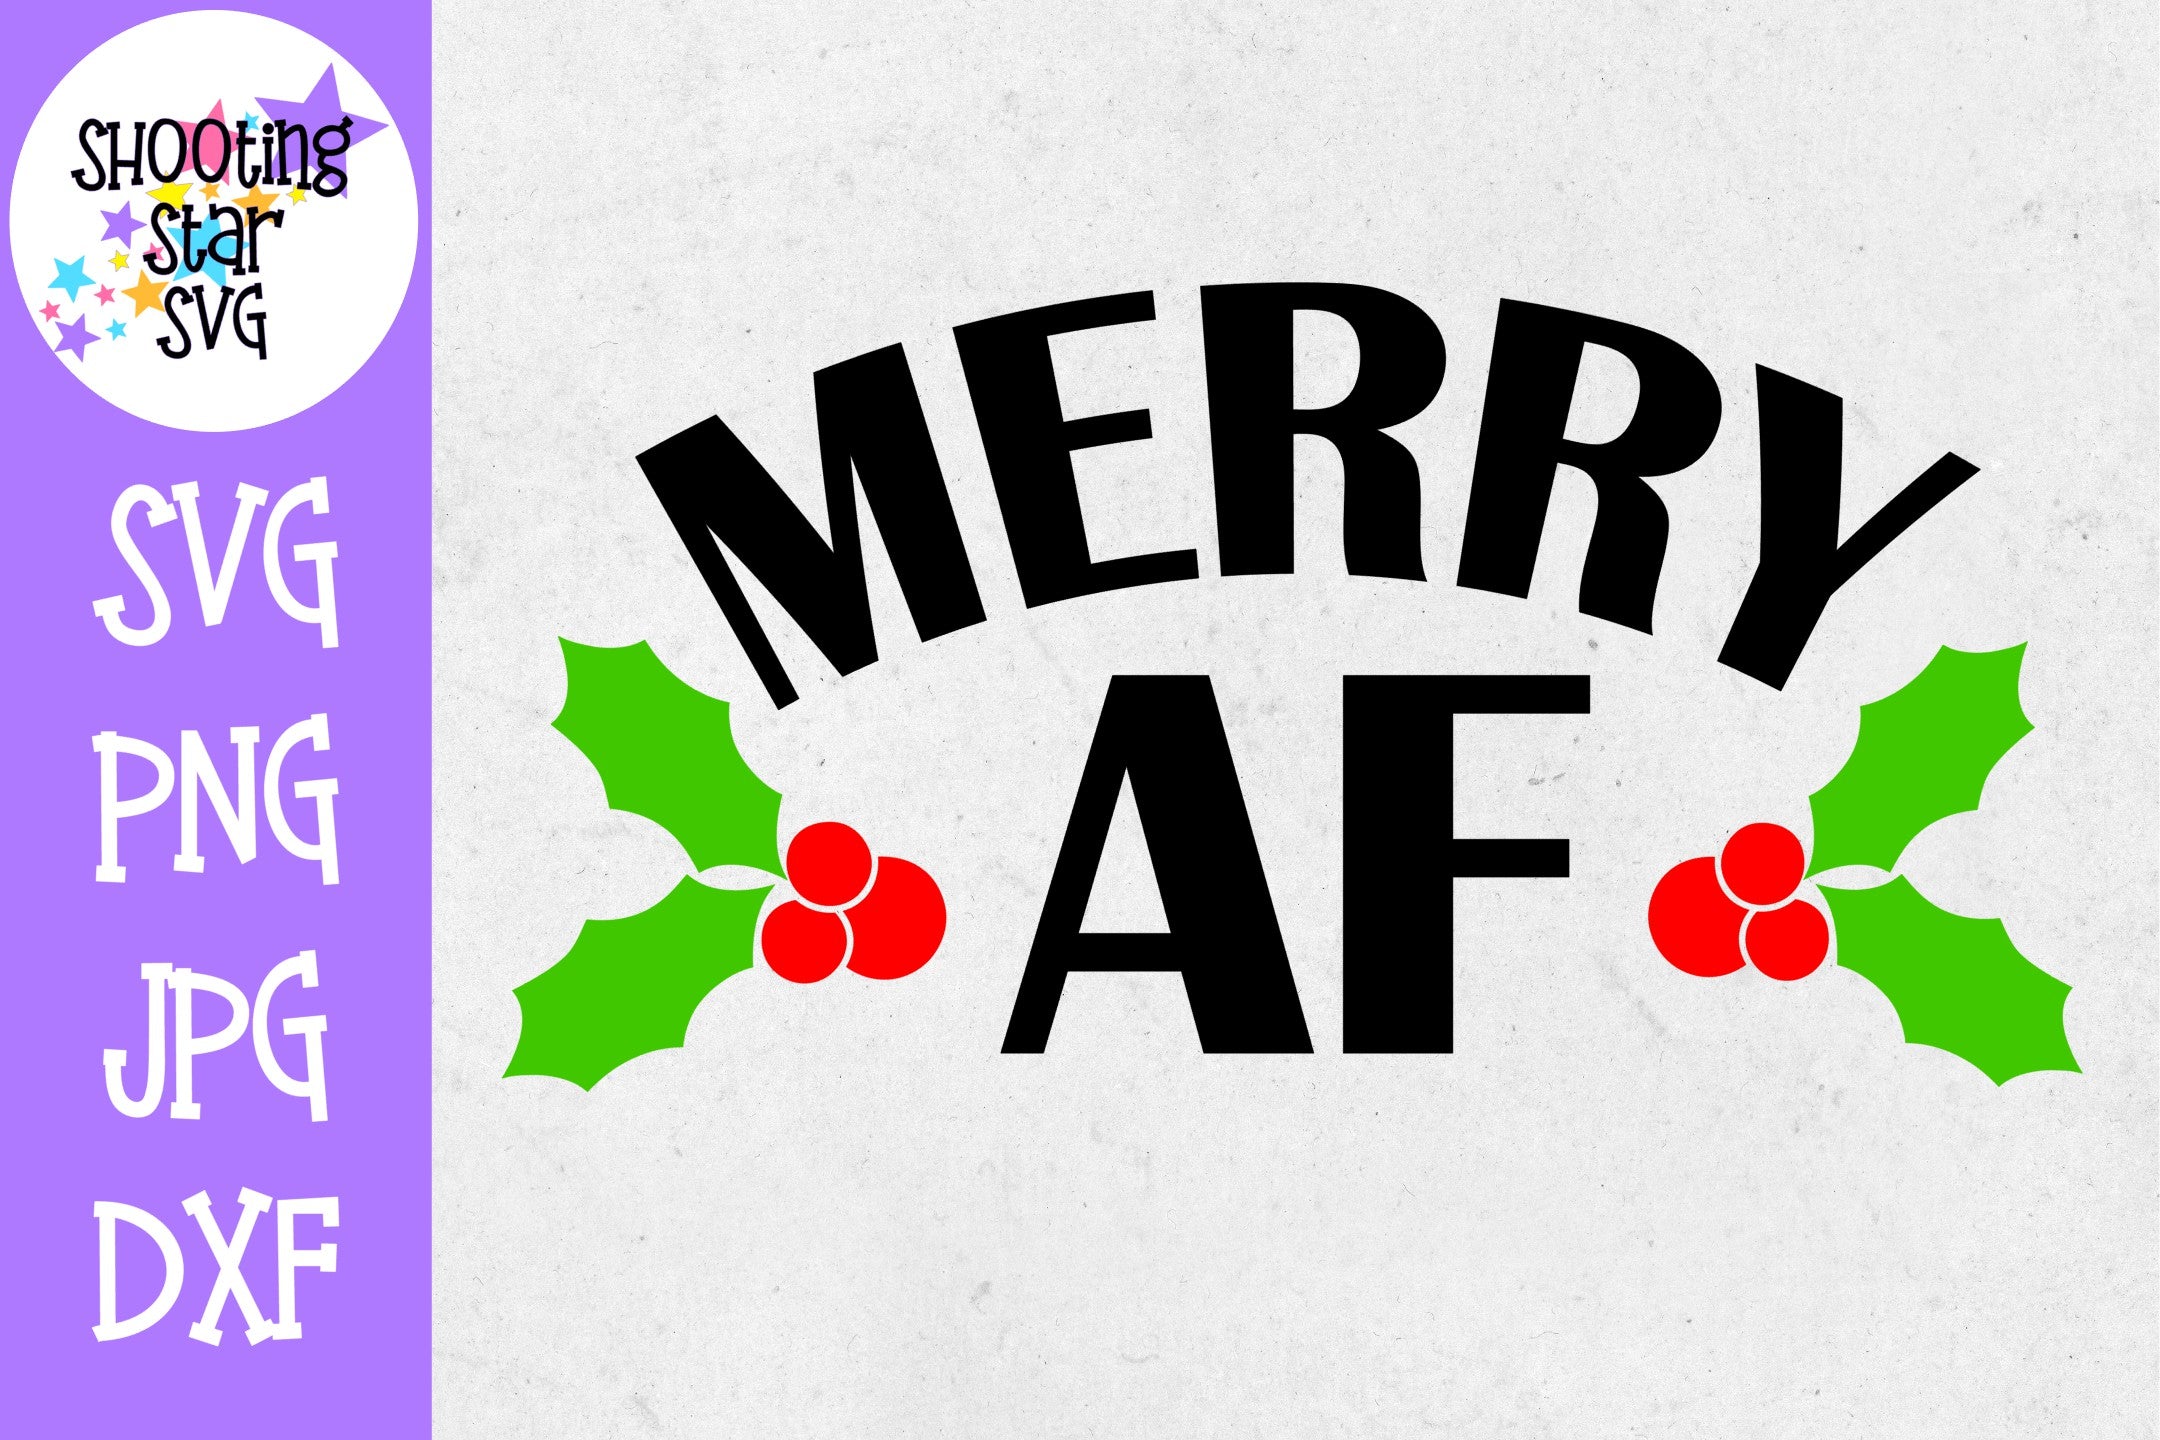 Merry AF SVG - Mistletoe SVG - Christmas SVG